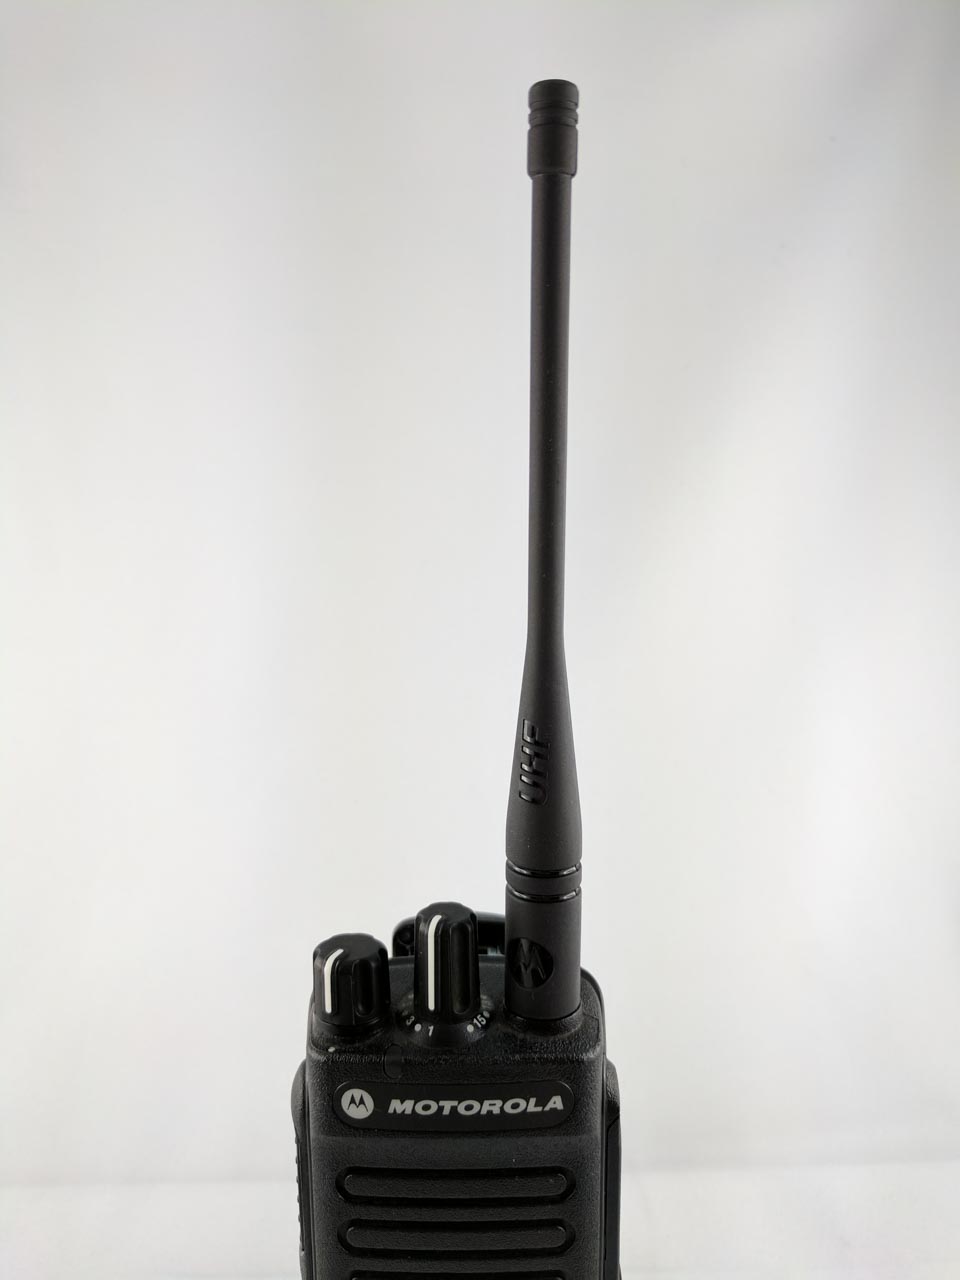 Motorola UHF SLIM WHIP Antenna 400-527MHz PMAE4079A